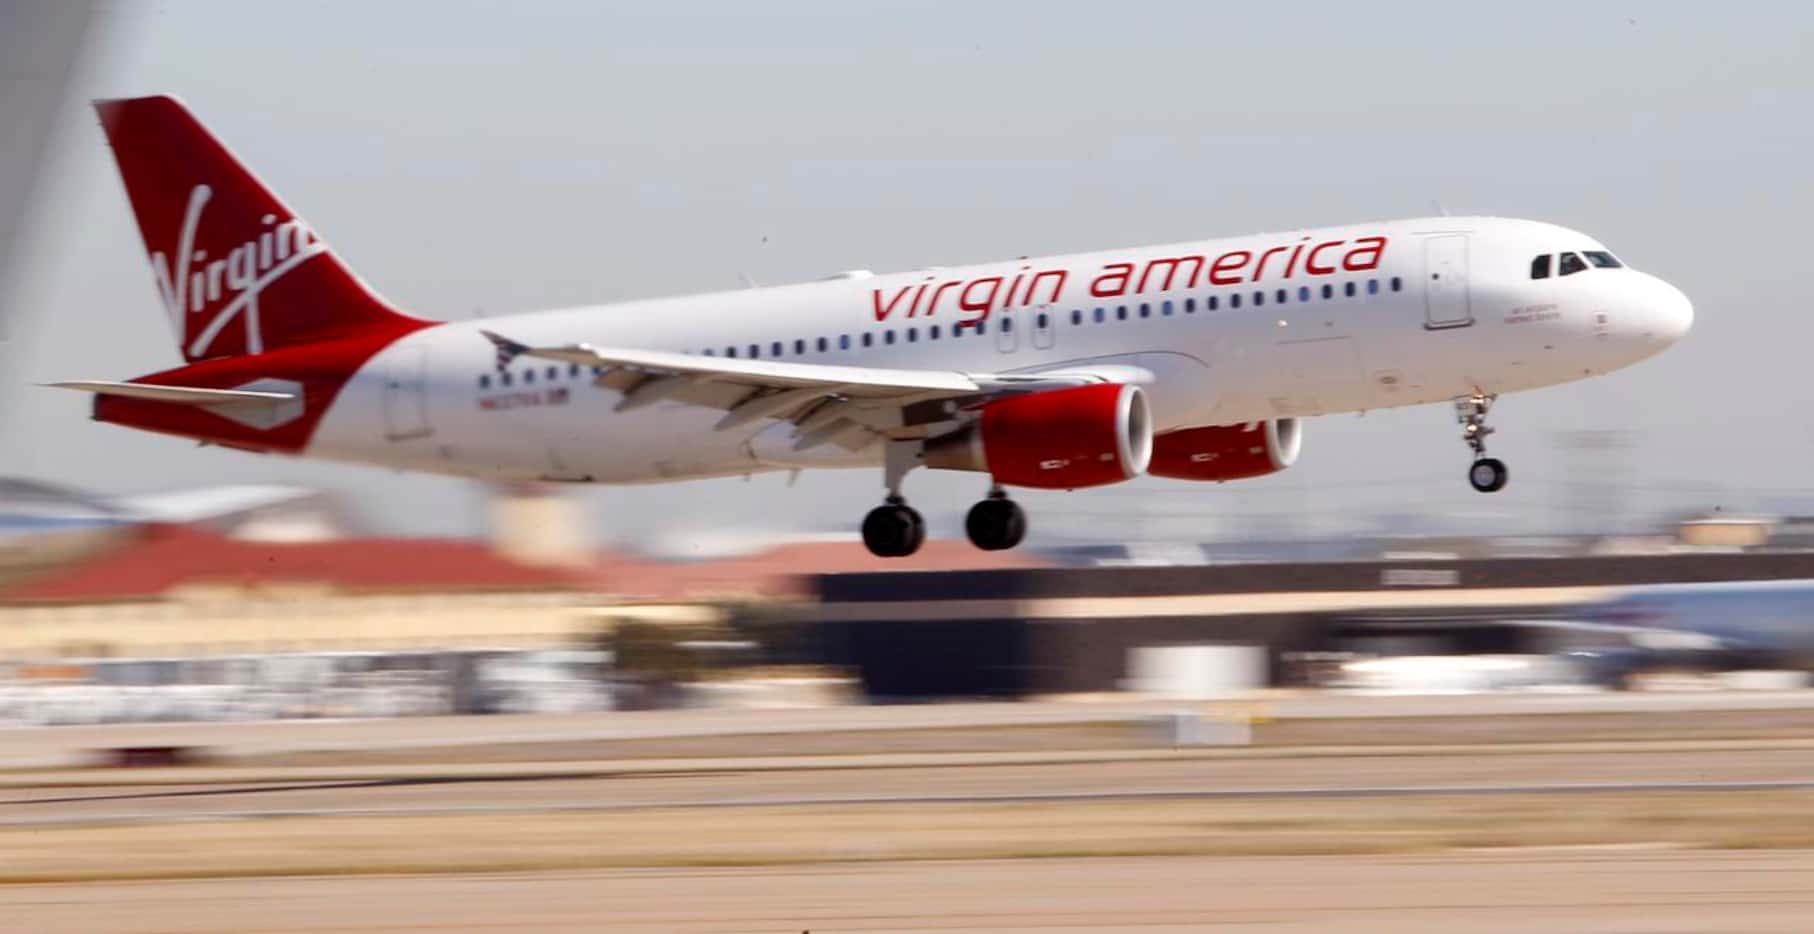 Virgin Airlines anunció cinco nuevos vuelos diarios del aeropuerto Dallas Love Field a...